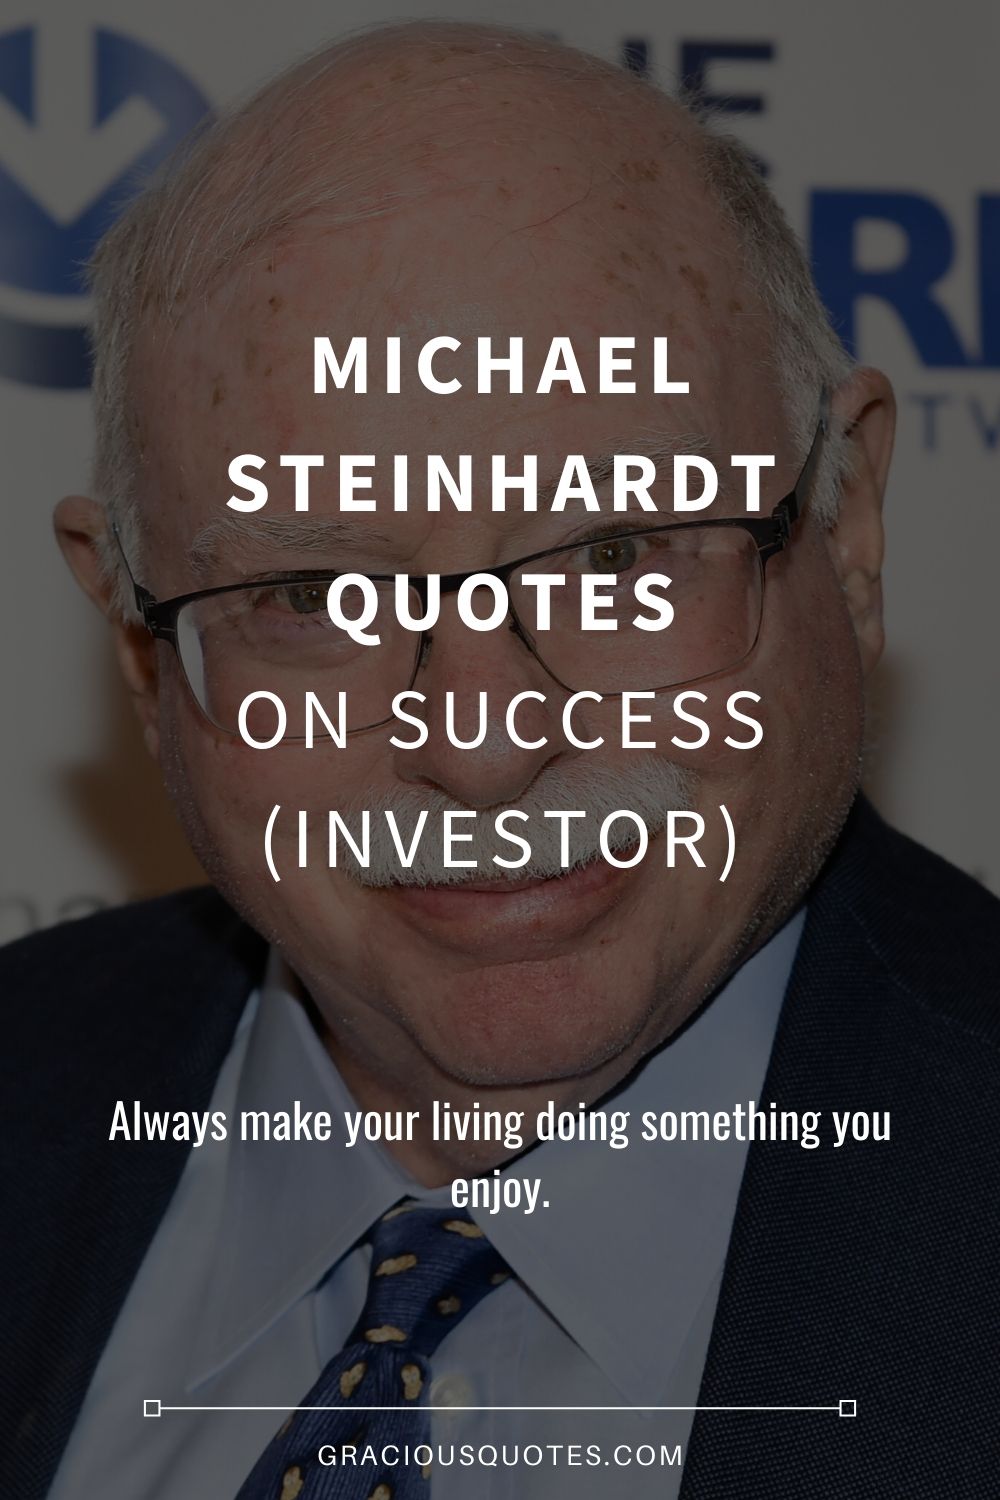 Michael Steinhardt Quotes on Success (INVESTOR) - Gracious Quotes